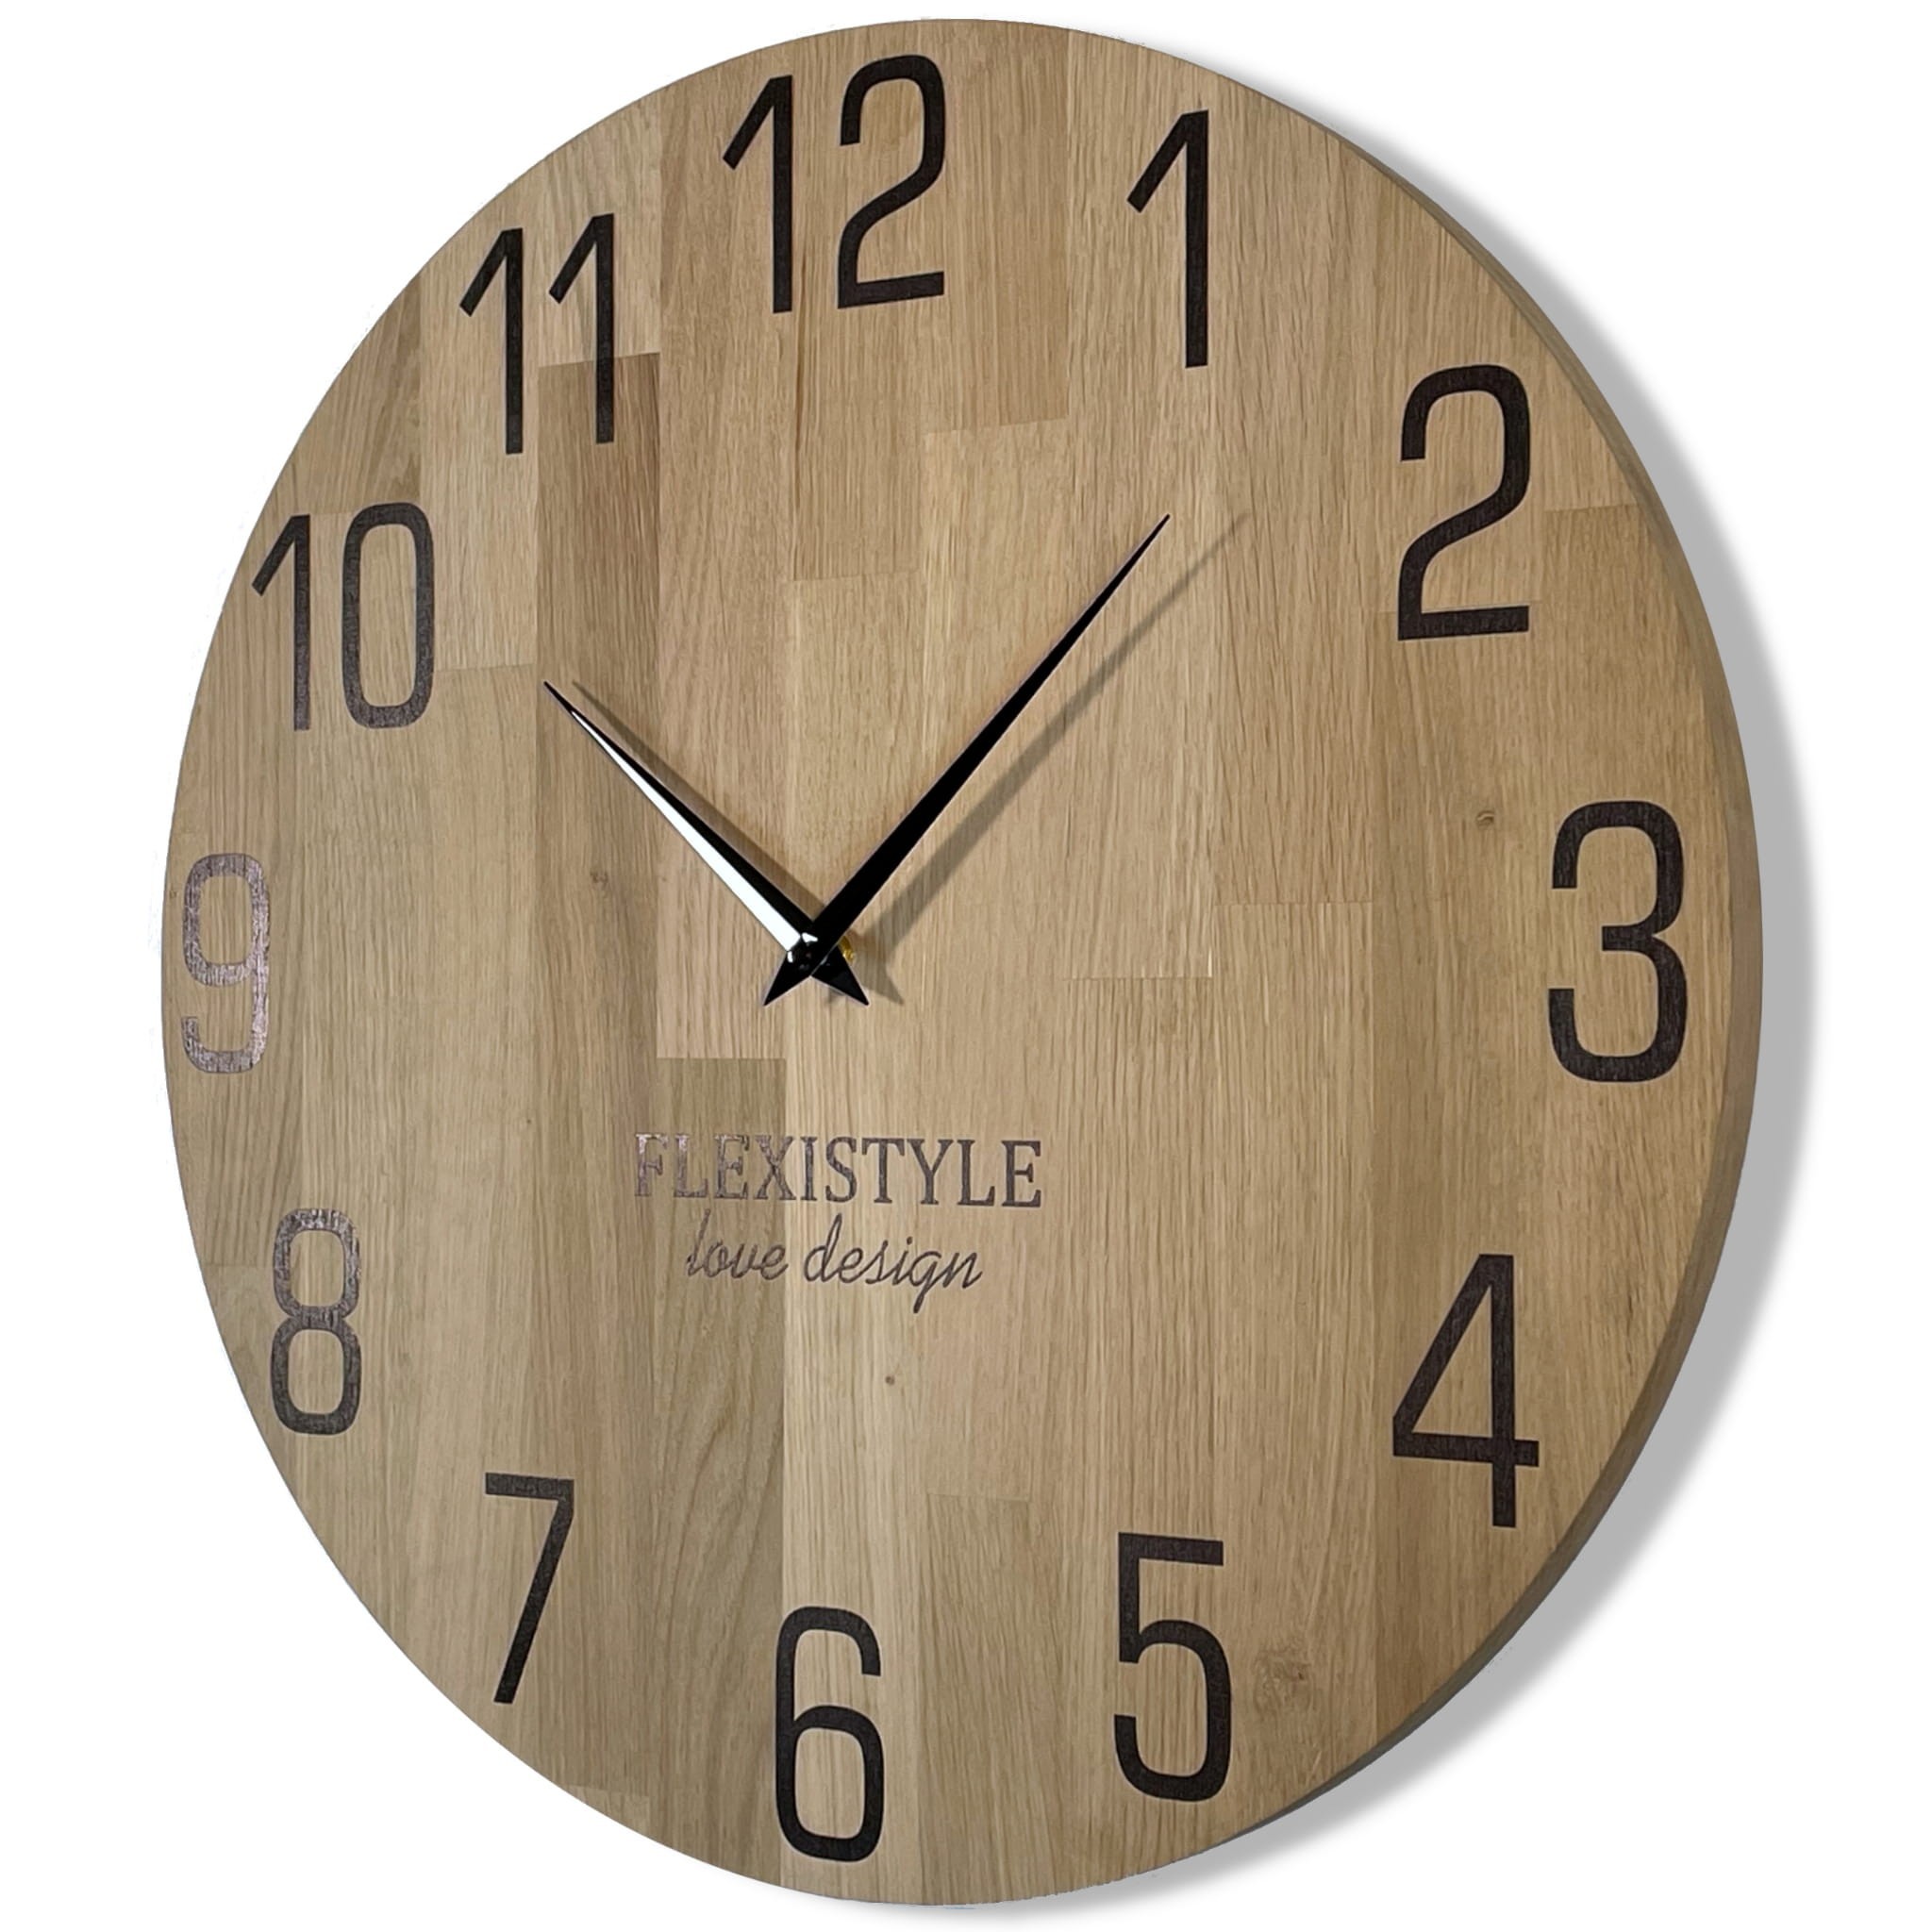 Luxusní dřevěné hodiny v barvě dub 30 cm